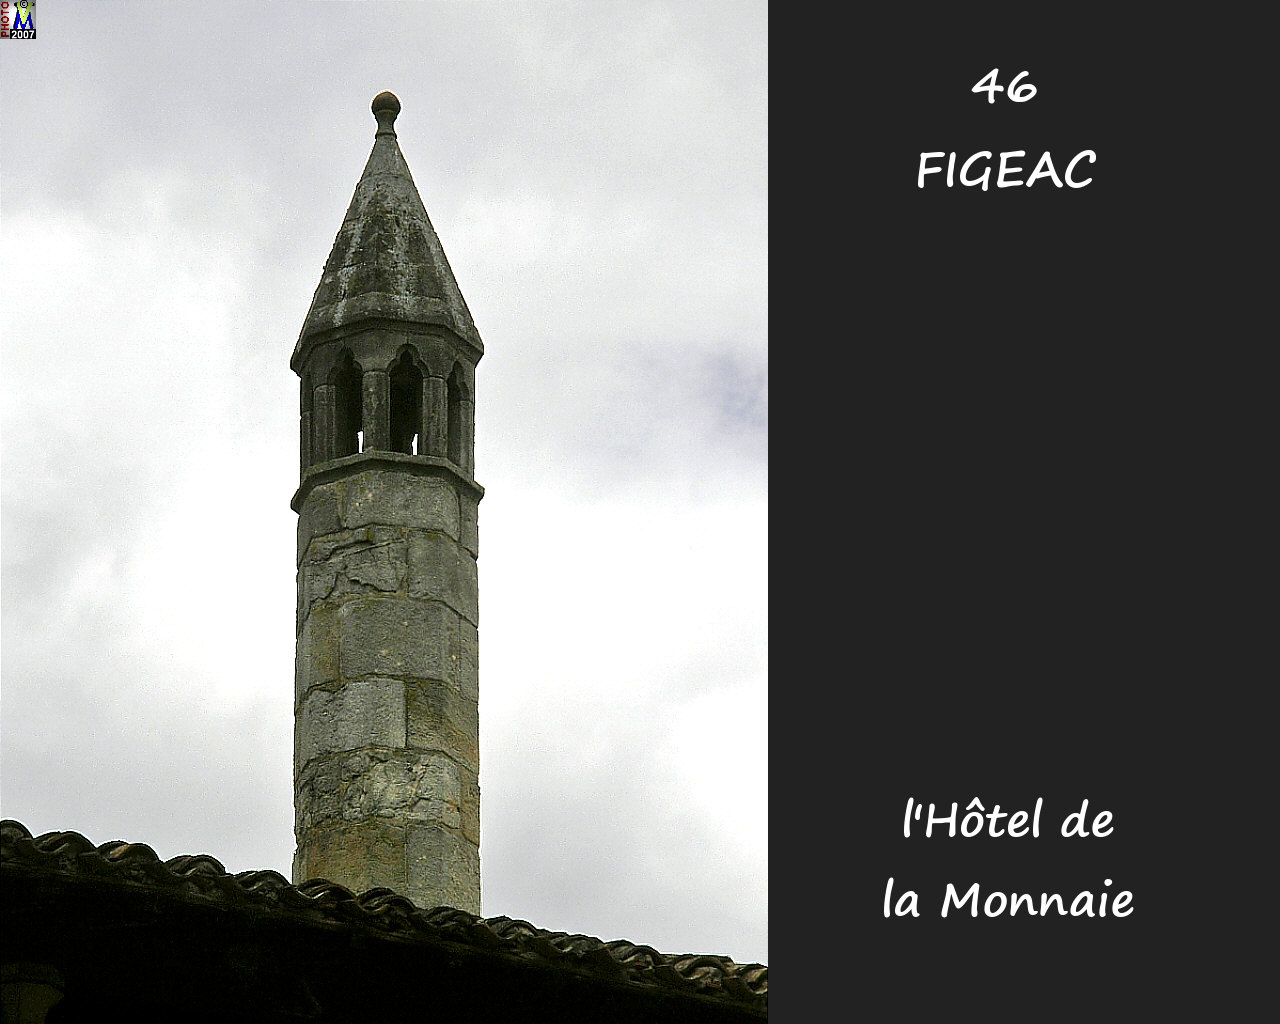 46FIGEAC_hotel-monnaie_110.jpg